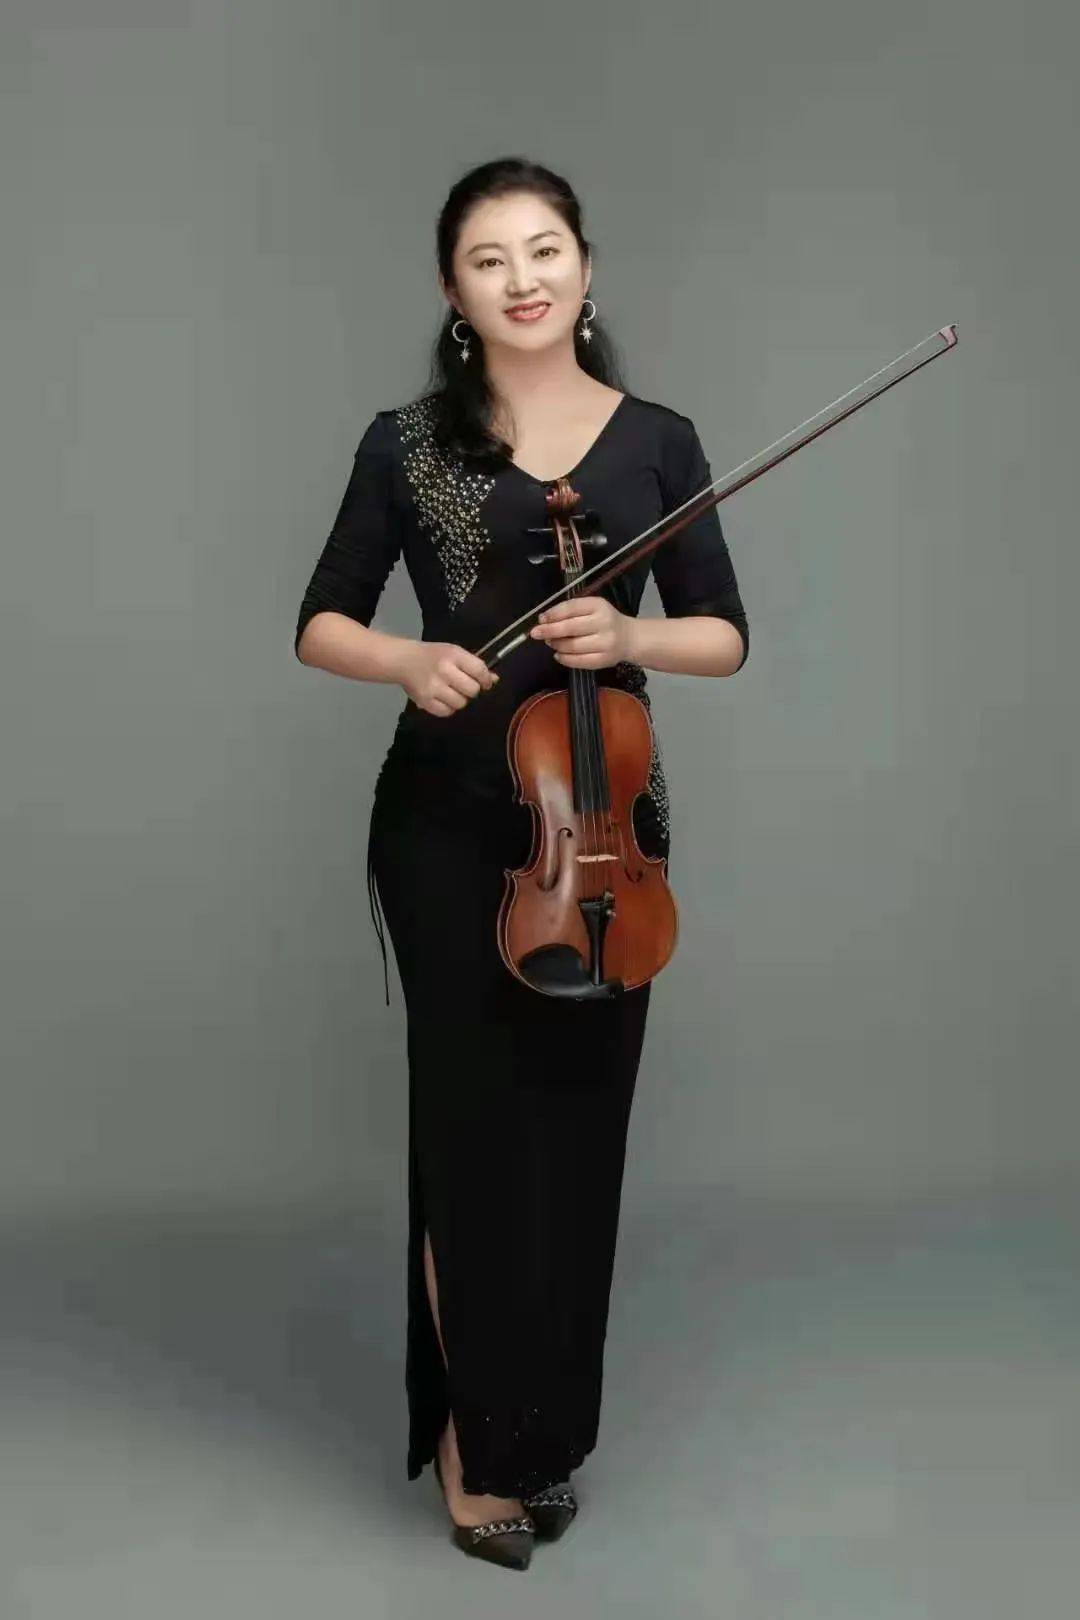 张歆妍 原厦门爱乐交响乐团第一小提琴手 北京少儿音协,福建音协会员